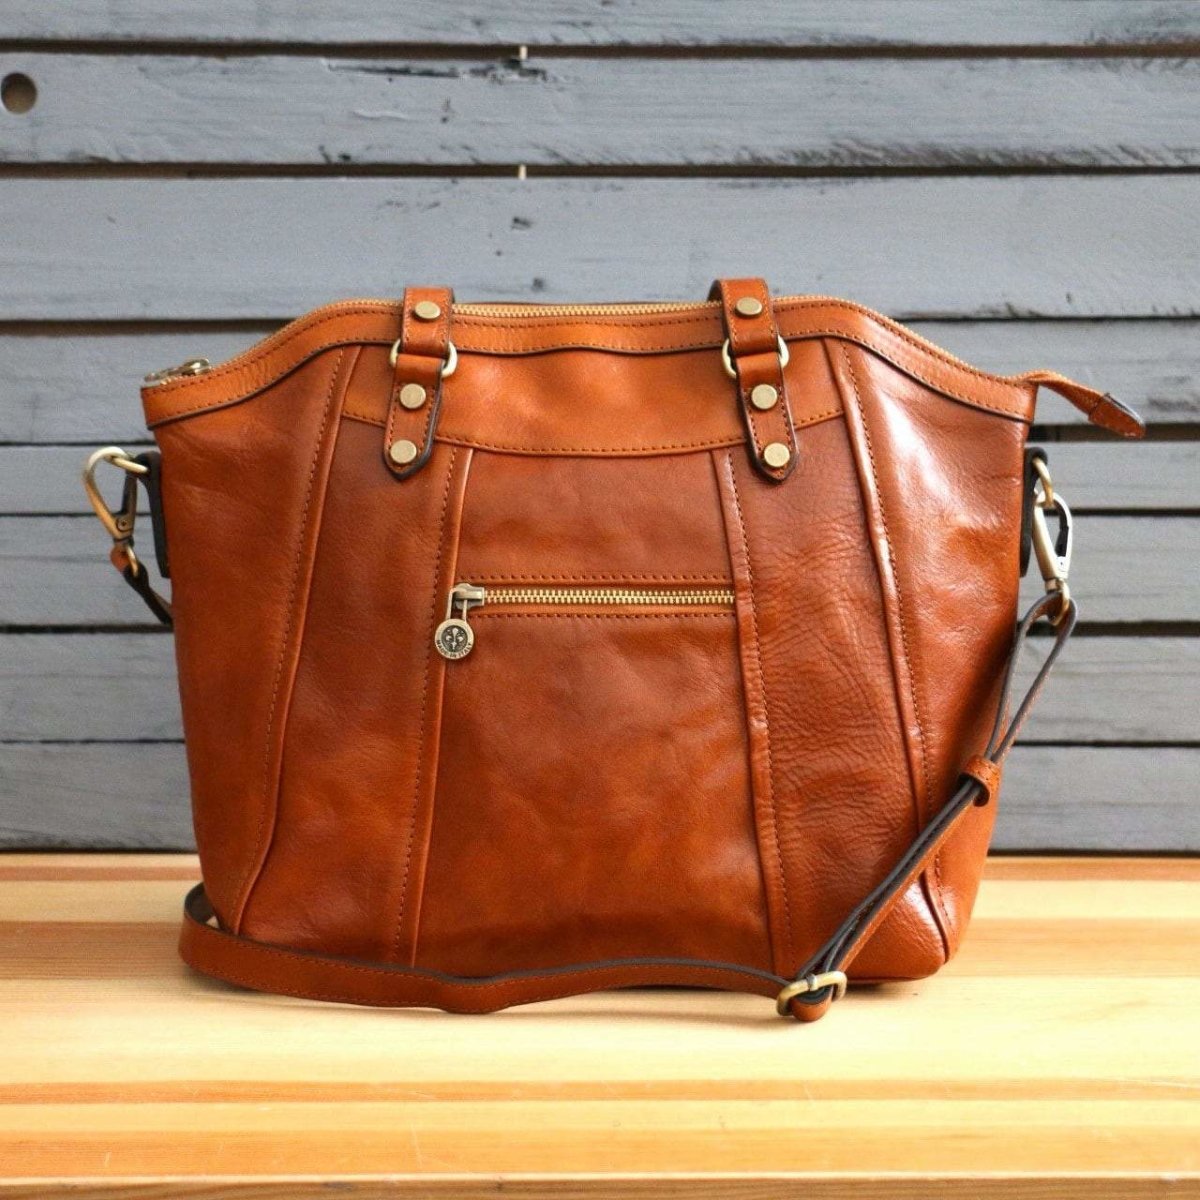 Best Lightweight Leather Handbags | semashow.com